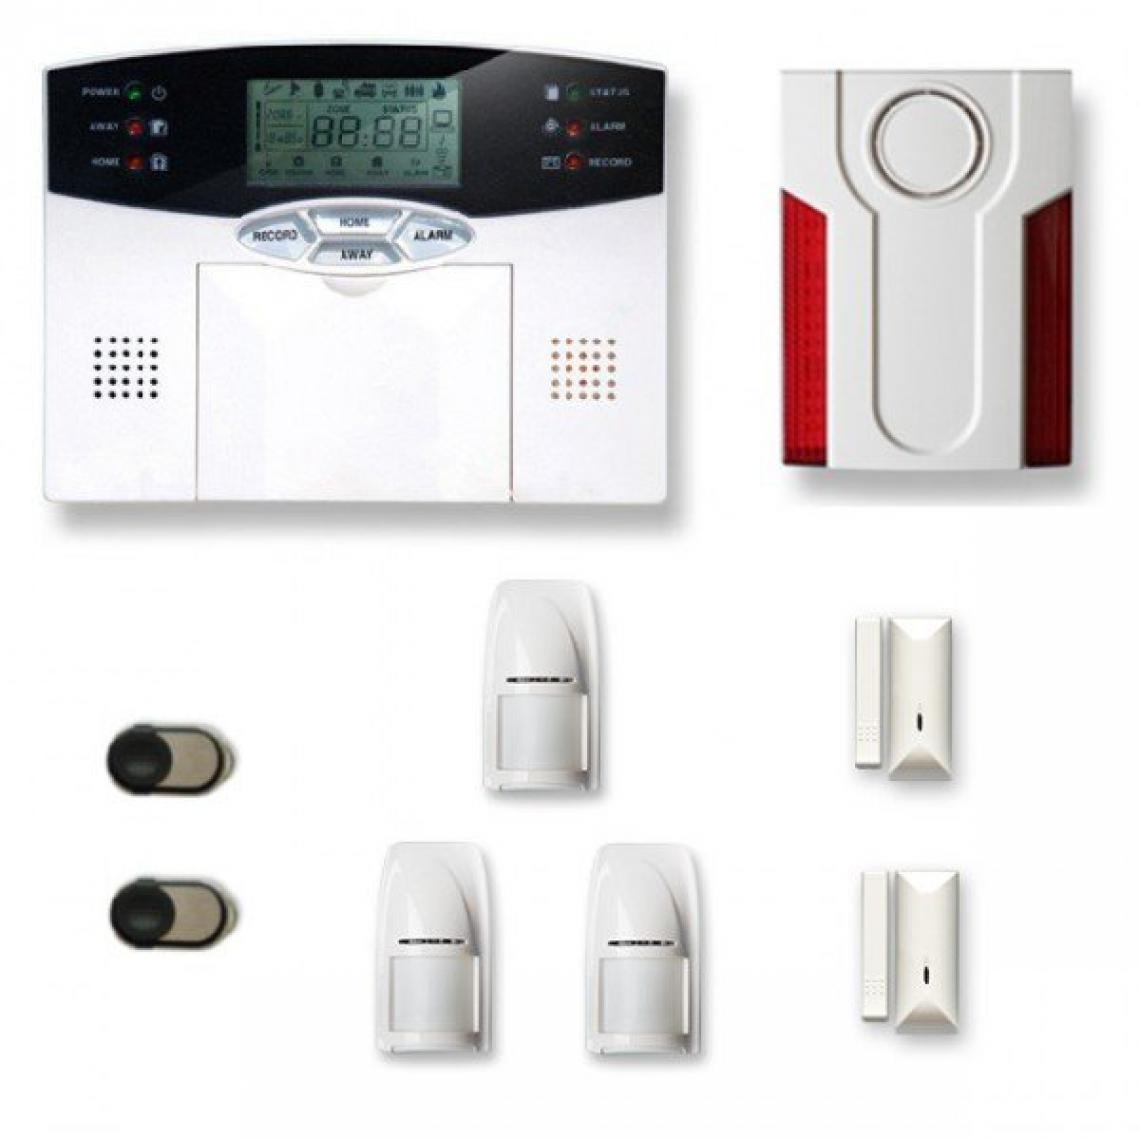 Tike Securite - Alarme maison sans fil MN27 Compatible Box internet - Alarme connectée